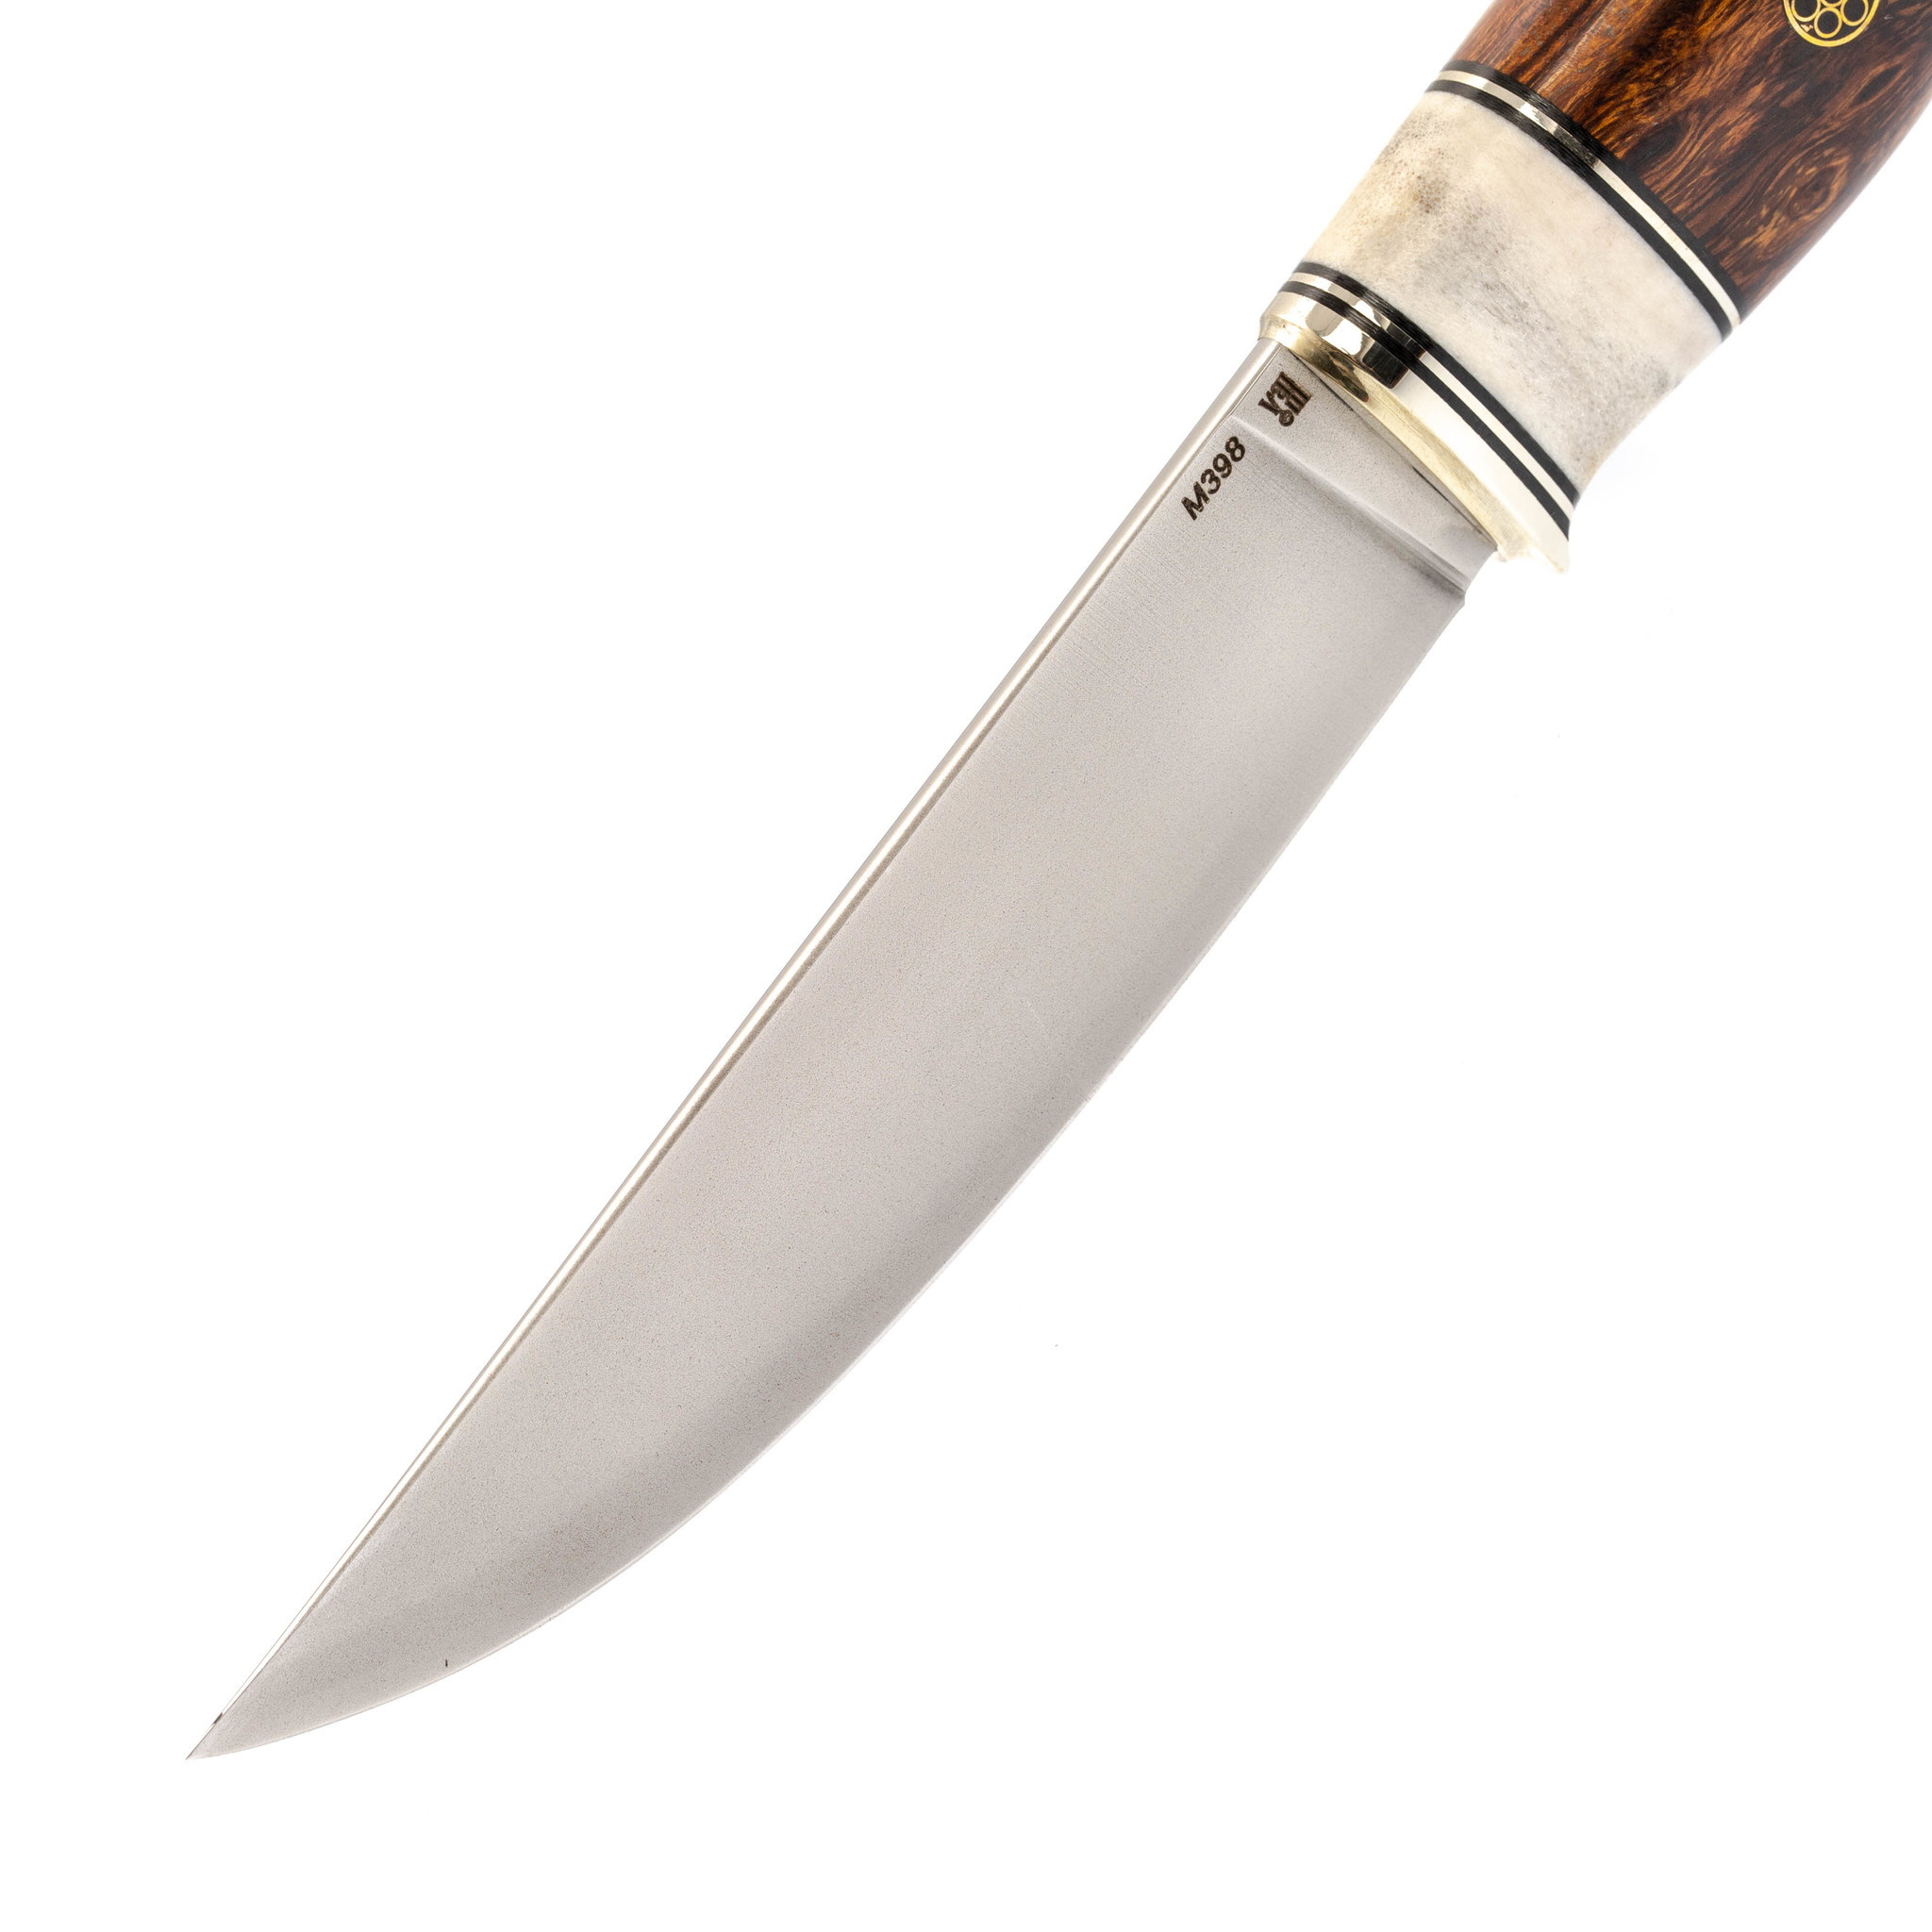 Нож Лидер 3, сталь M398, железное дерево, вставка рог лося - фото 2